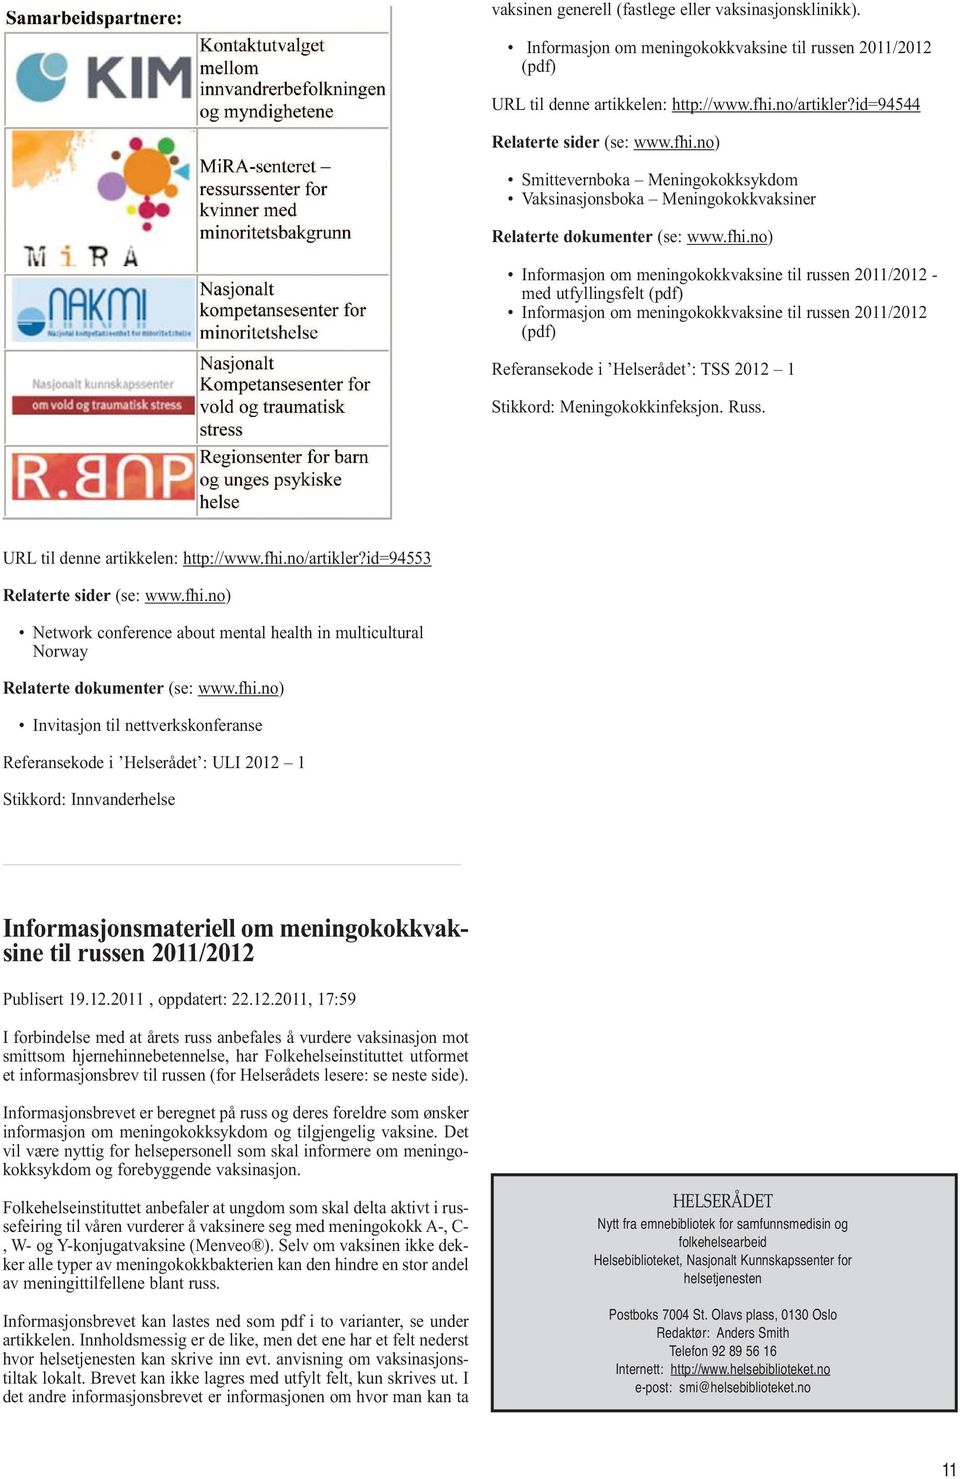 no) Smittevernboka Meningokokksykdom Vaksinasjonsboka Meningokokkvaksiner Relaterte dokumenter (se: www.fhi.